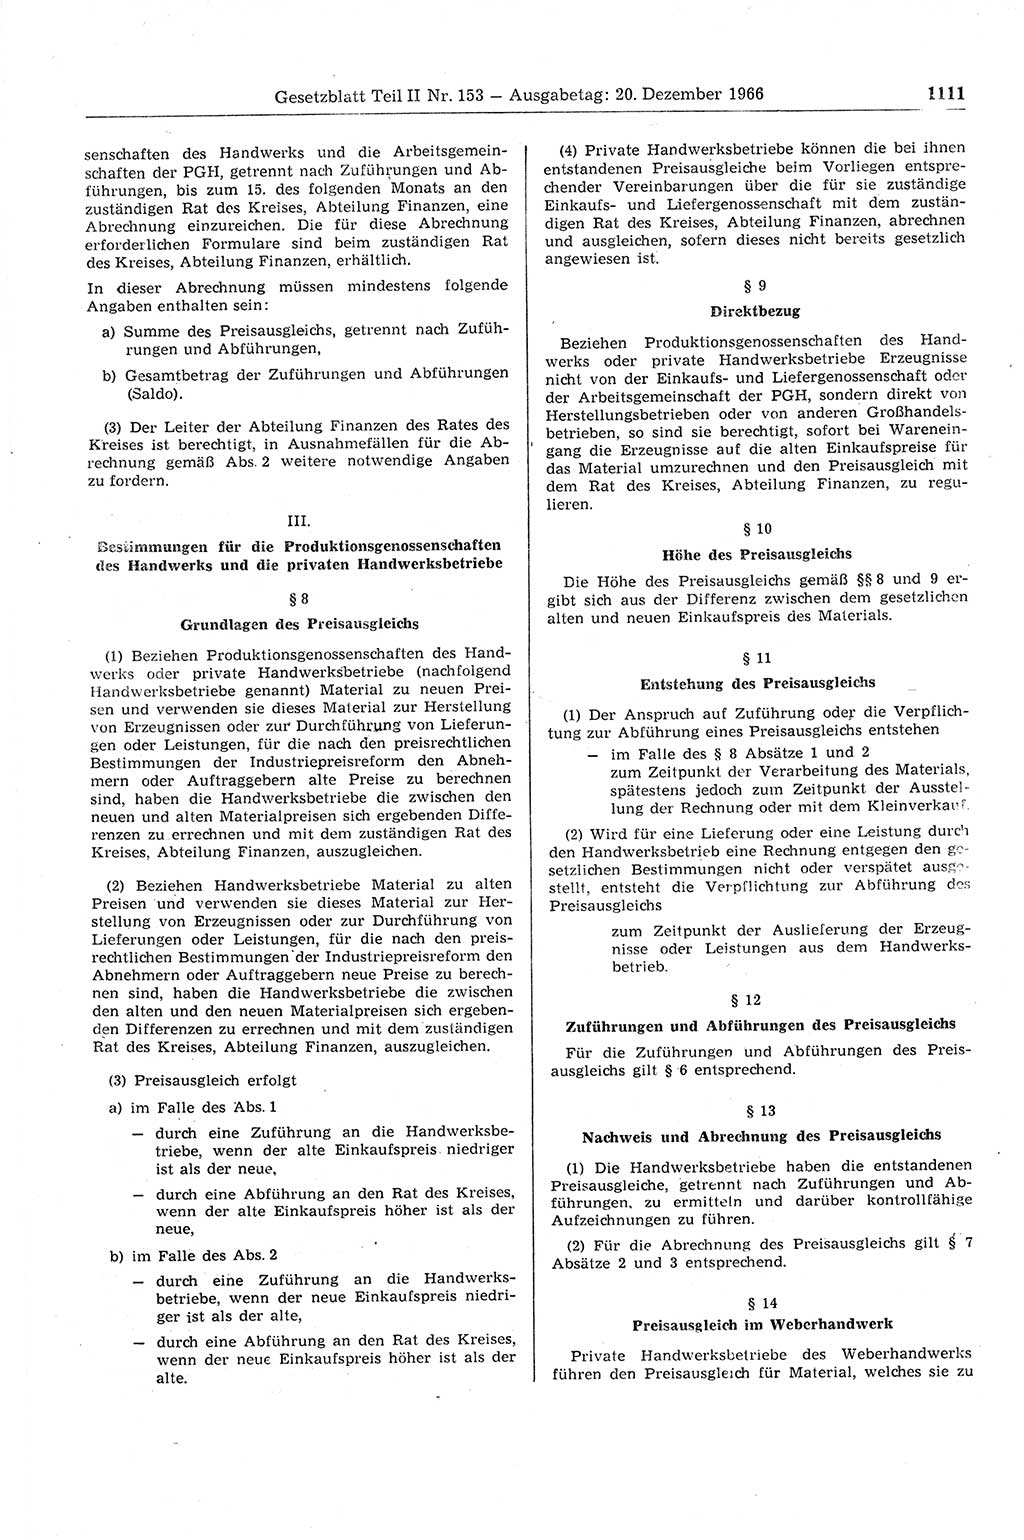 Gesetzblatt (GBl.) der Deutschen Demokratischen Republik (DDR) Teil ⅠⅠ 1966, Seite 1111 (GBl. DDR ⅠⅠ 1966, S. 1111)